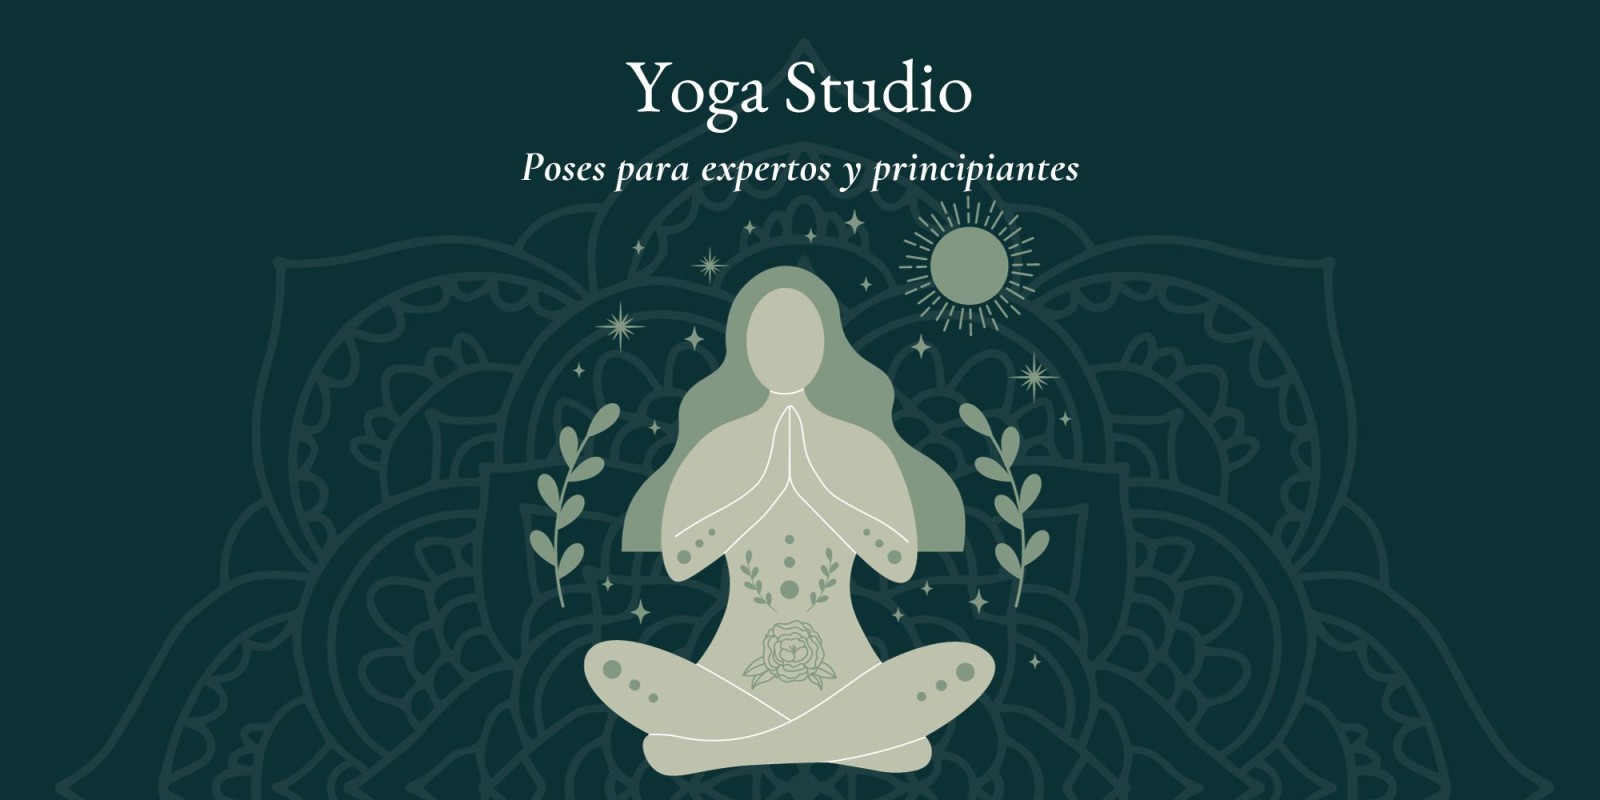 Yoga Studio: Poses para expertos y principiantes